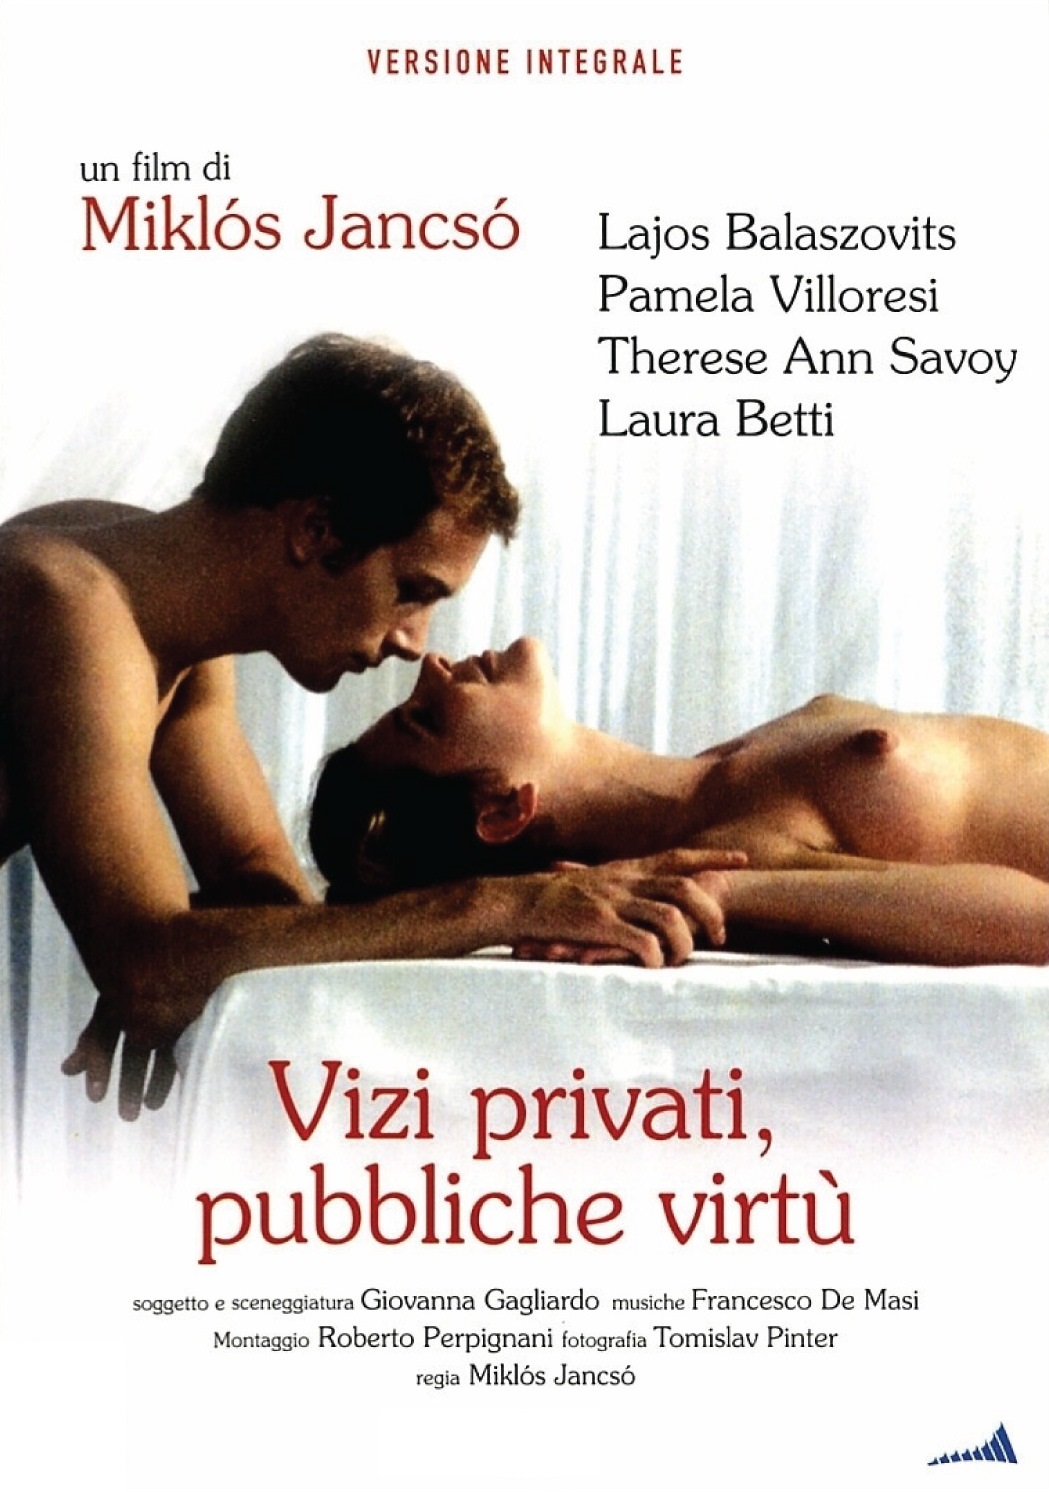 Vizi privati, pubbliche virtù [HD] (1975)